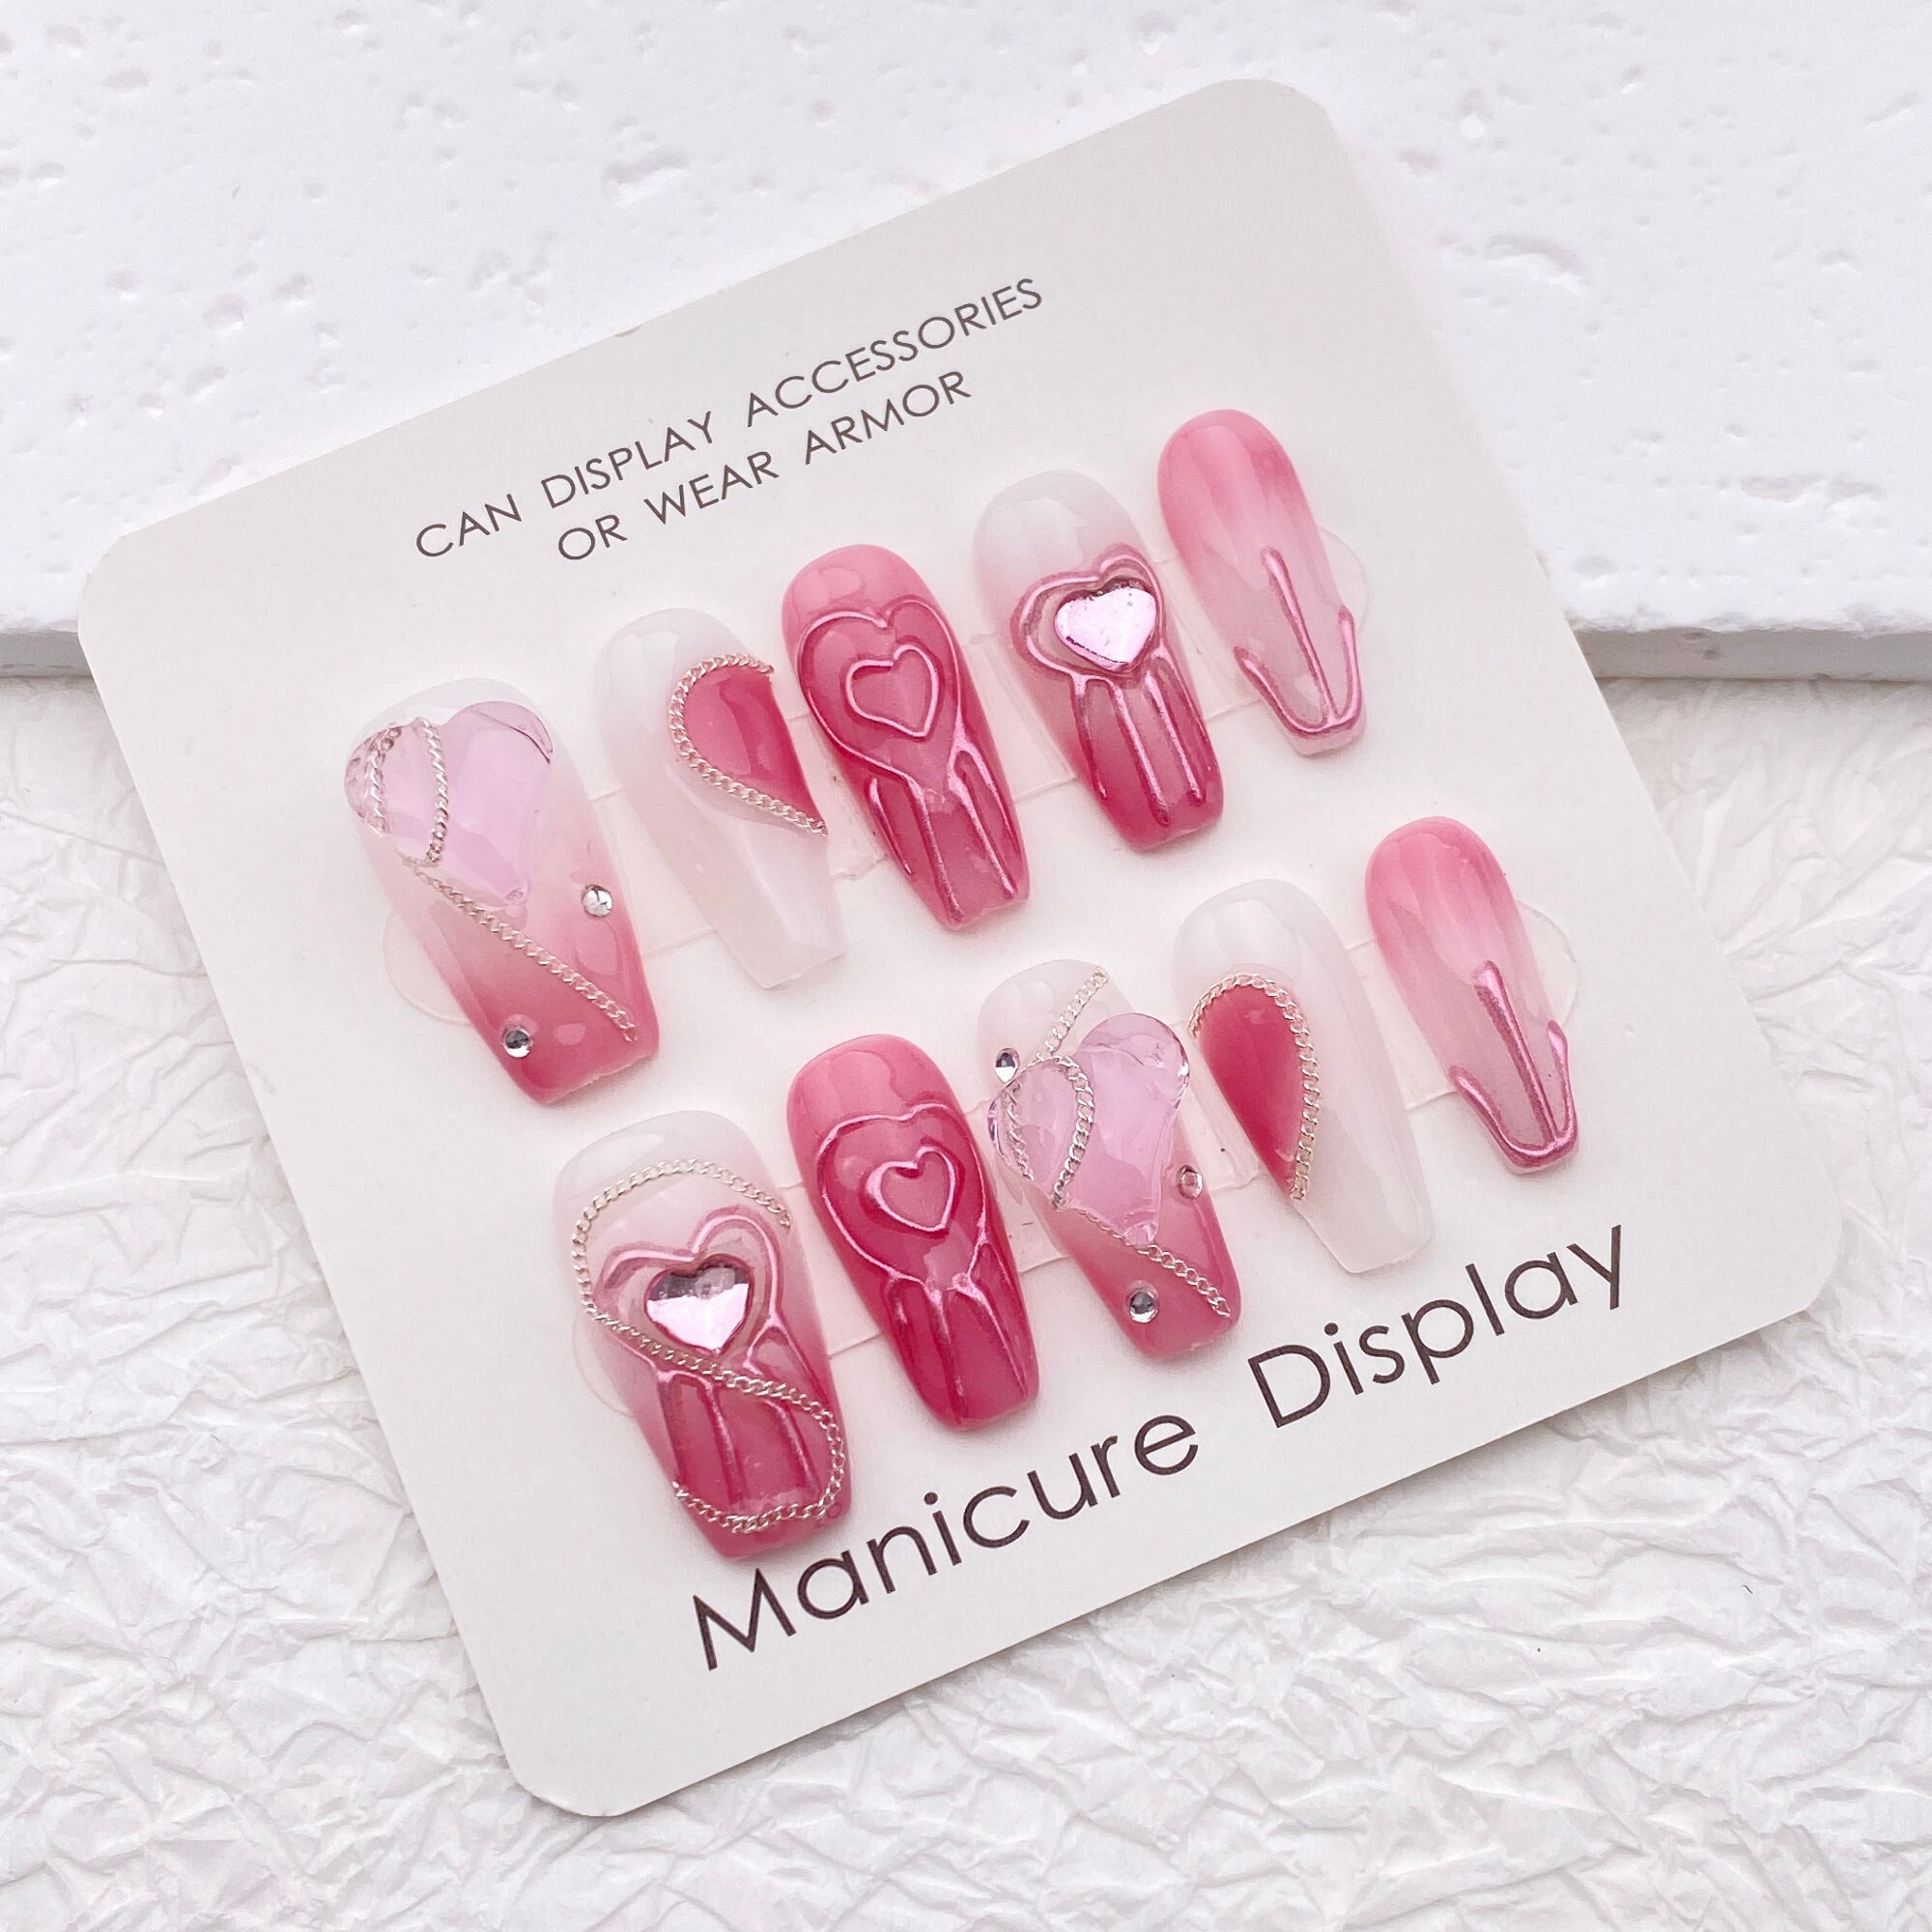 rhinestones for acrylic nails,pink crystals for nails, cristales rosa para  uñas